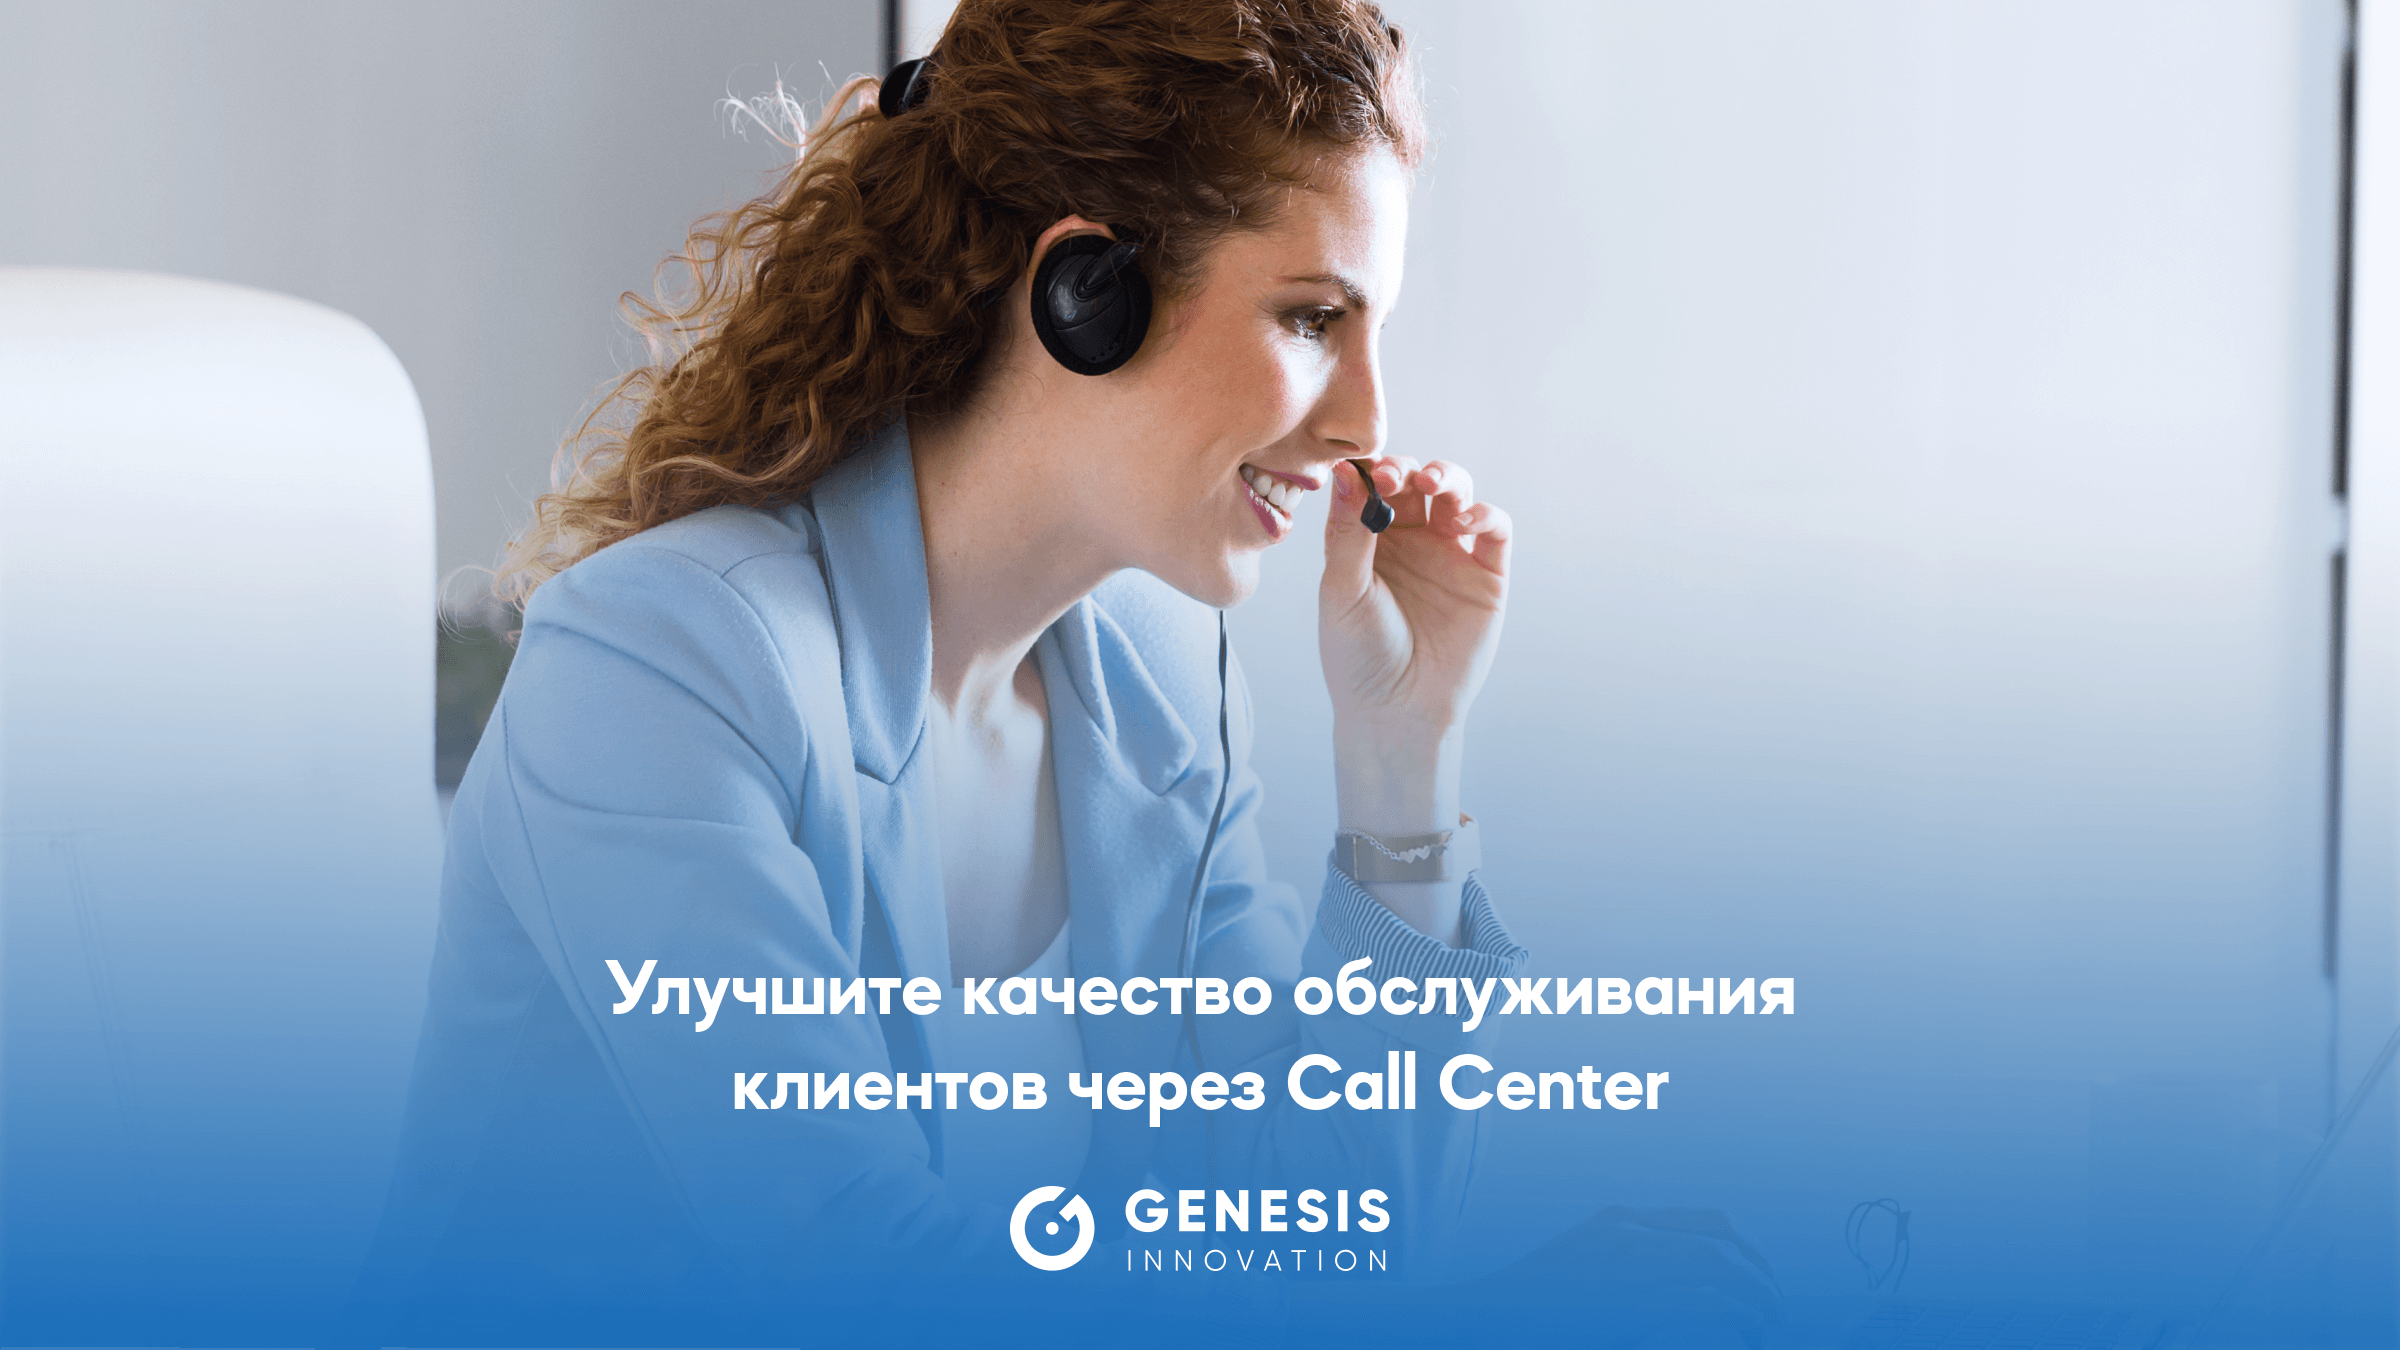 Улучшите качество обслуживания клиентов через Call Center.